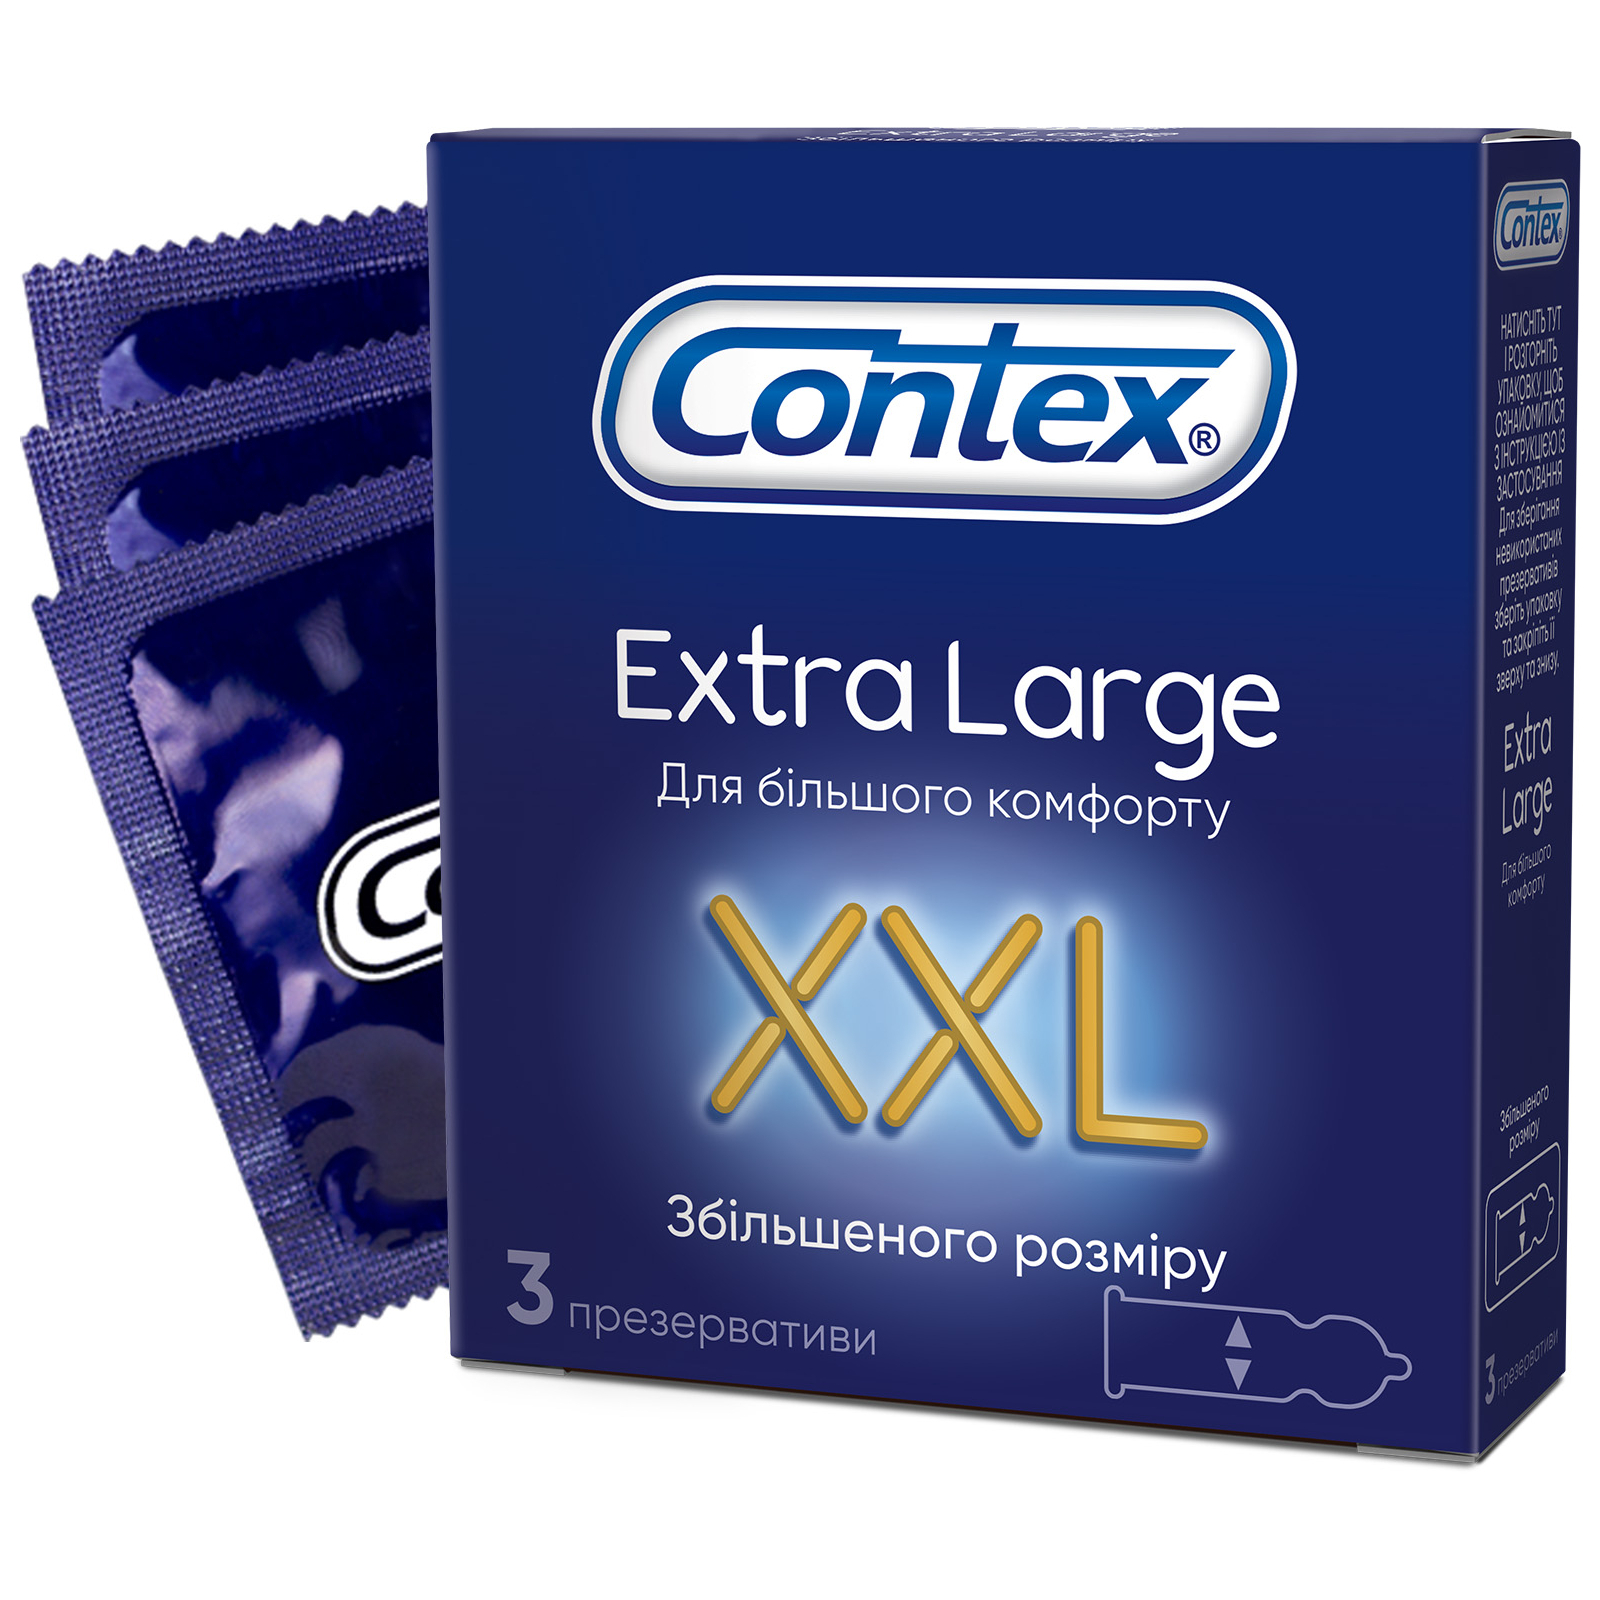 Презервативы Contex Extra Large увеличенного размера с силиконовой смазкой 3 шт. (5060040300077)